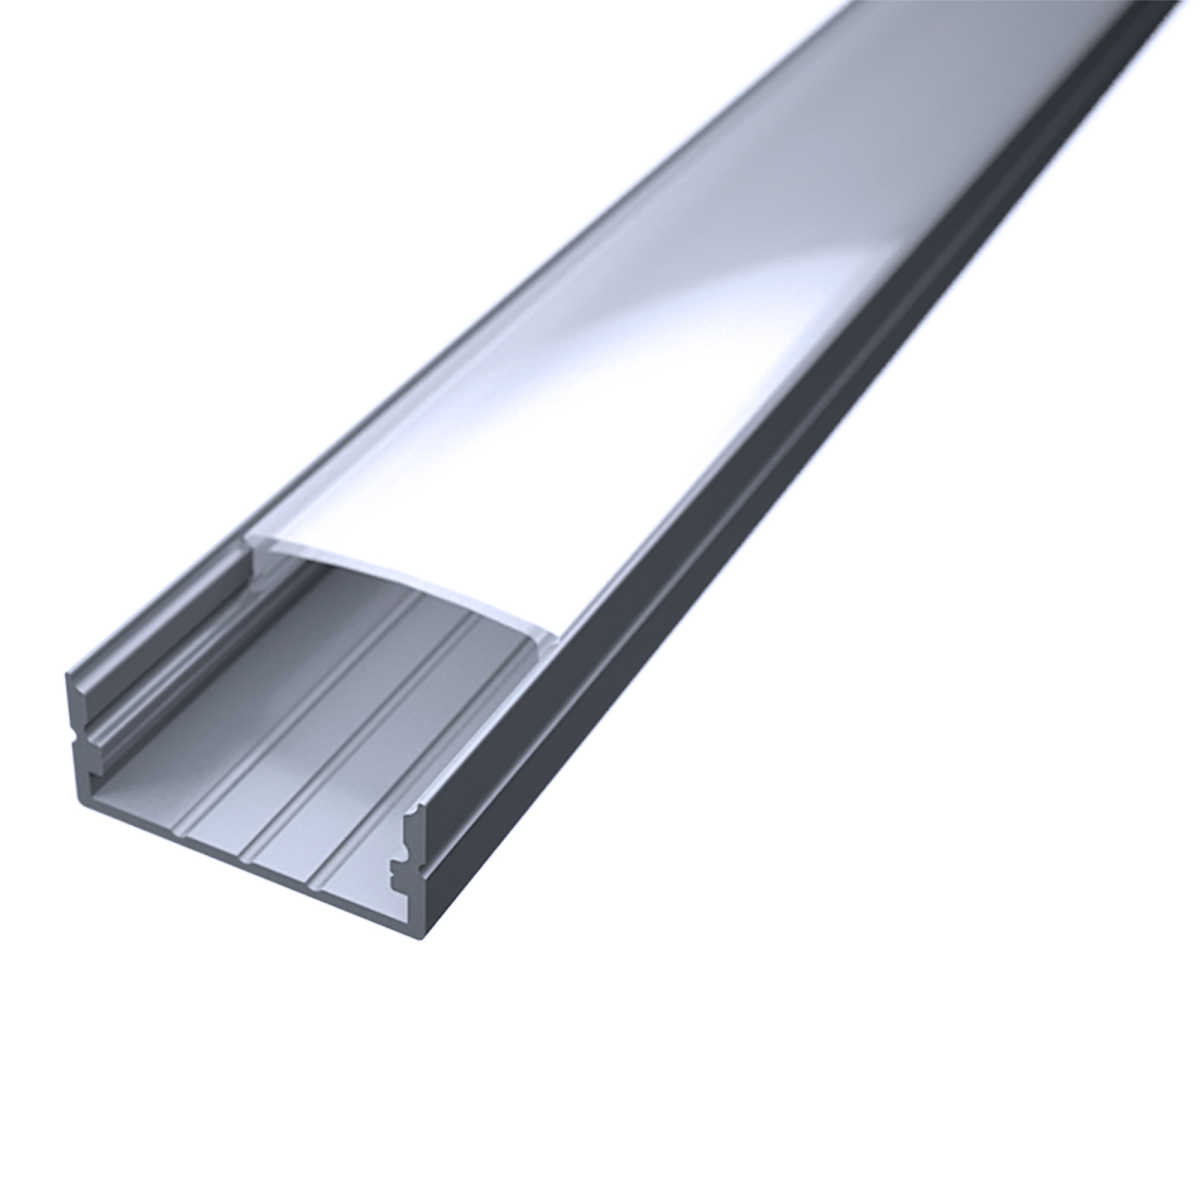 LED Flachprofil "Slim-Line max" | Abdeckung diffus | Zuschnitt auf 158cm |